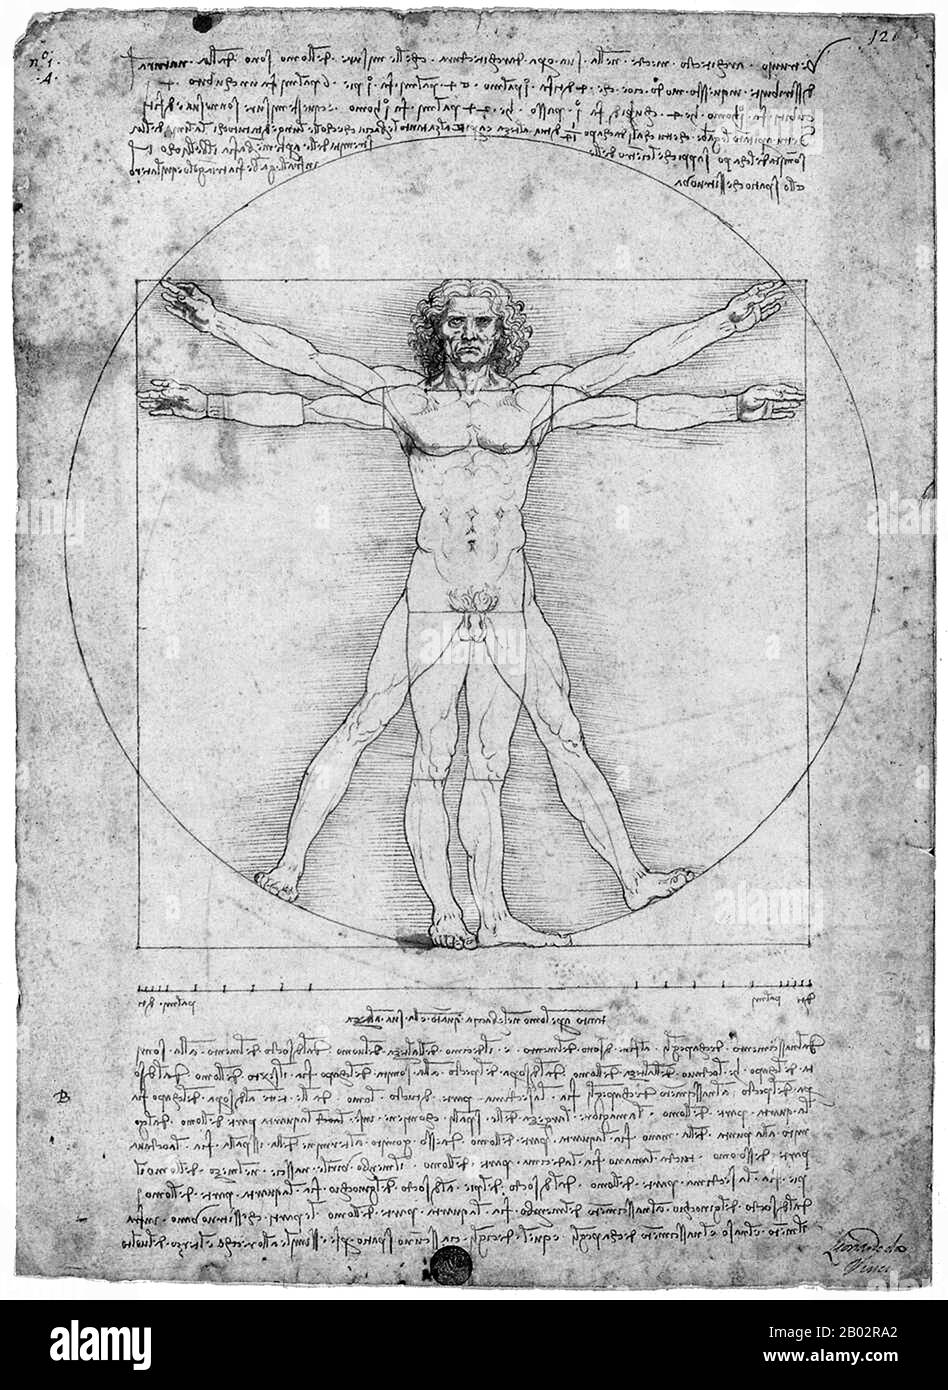 Leonardo di ser Piero da Vinci (15 avril 1452 – 2 mai 1519) était une polymath italienne, peintre, sculpteur, architecte, musicien, mathématicien, ingénieur, inventeur, anatomiste, géologue, cartographe, botaniste et écrivain. Il est largement considéré comme l'un des plus grands peintres de tous les temps et peut-être la personne la plus douée jamais à avoir vécu. L'homme vitruvien est un dessin de Leonardo da Vinci vers 1490. Il est accompagné de notes sur la base des travaux de l'architecte Vitruvius. Le dessin, qui est dans le stylo et l'encre sur le papier, dépeint un homme dans deux positions superposées avec ses bras Banque D'Images